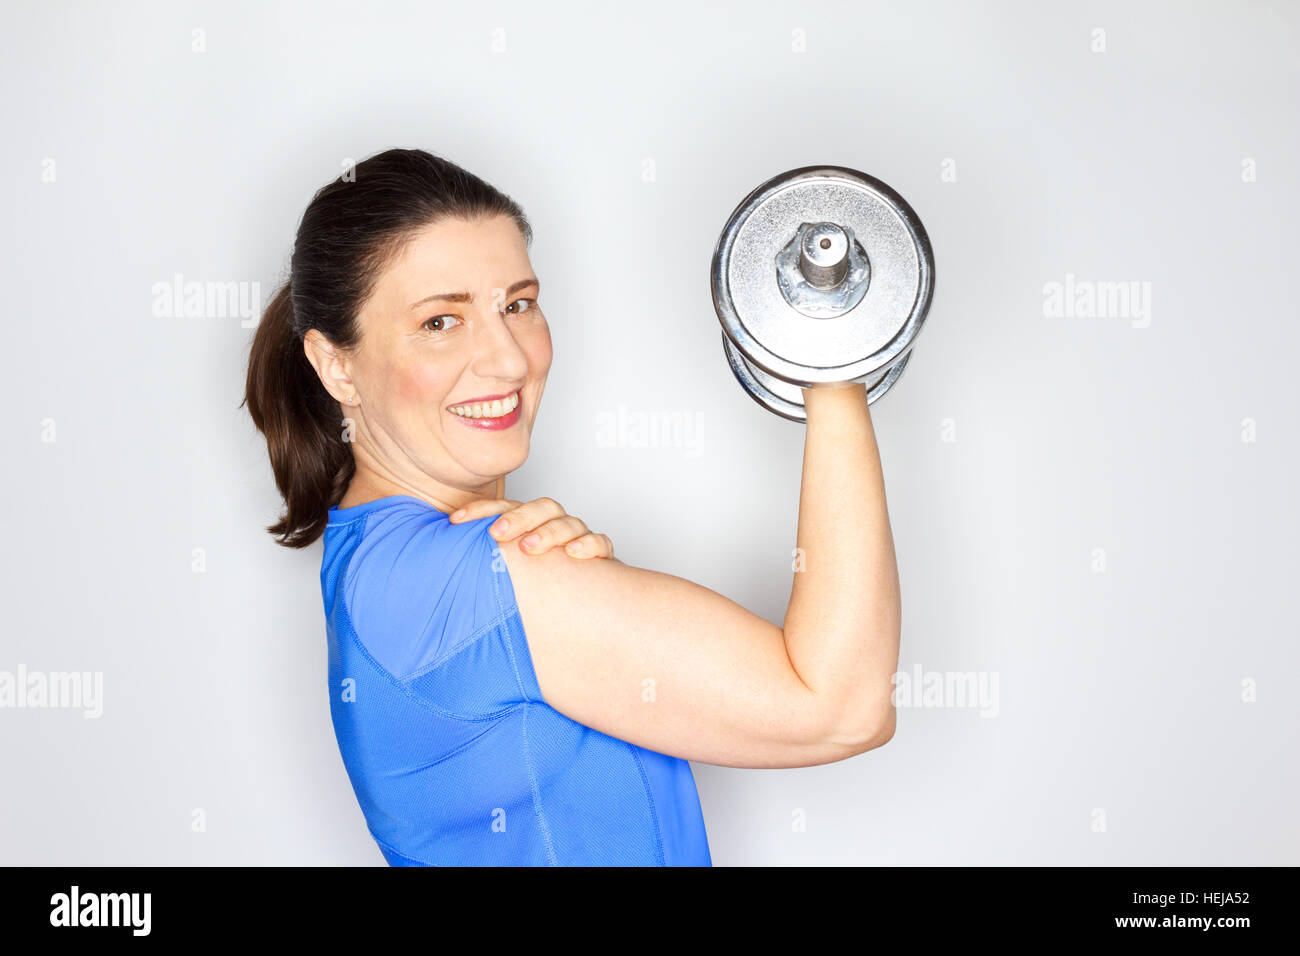 Fröhlich und stolz auf gewöhnliche Frau in hell blau Sportoutfit Heavy-Metal-Gewicht heben, halten ihre New Years resolution Stockfoto